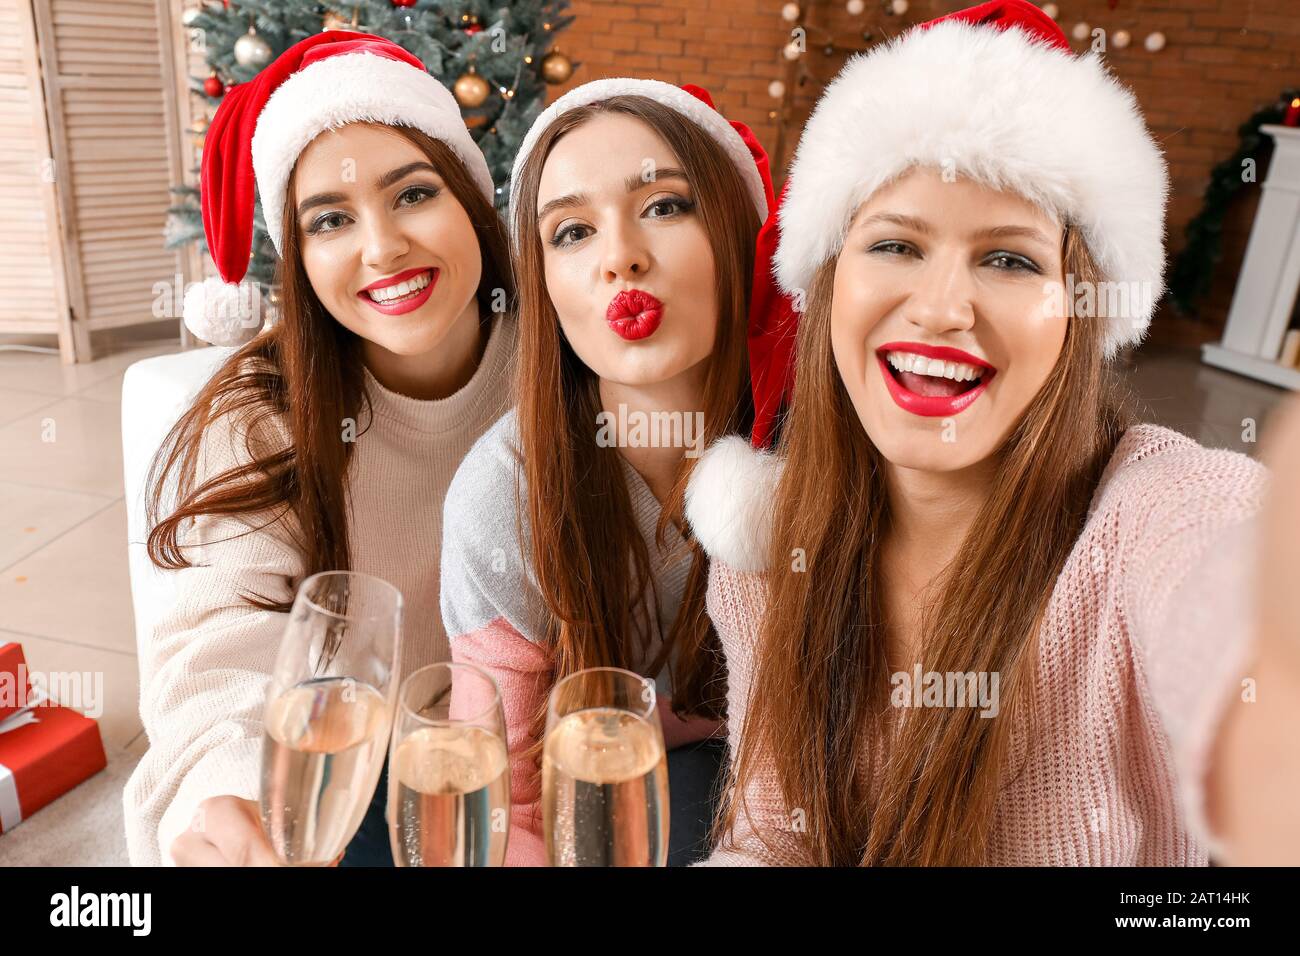 Schöne junge Frauen, die selfie auf der Weihnachtsfeier nehmen Stockfoto